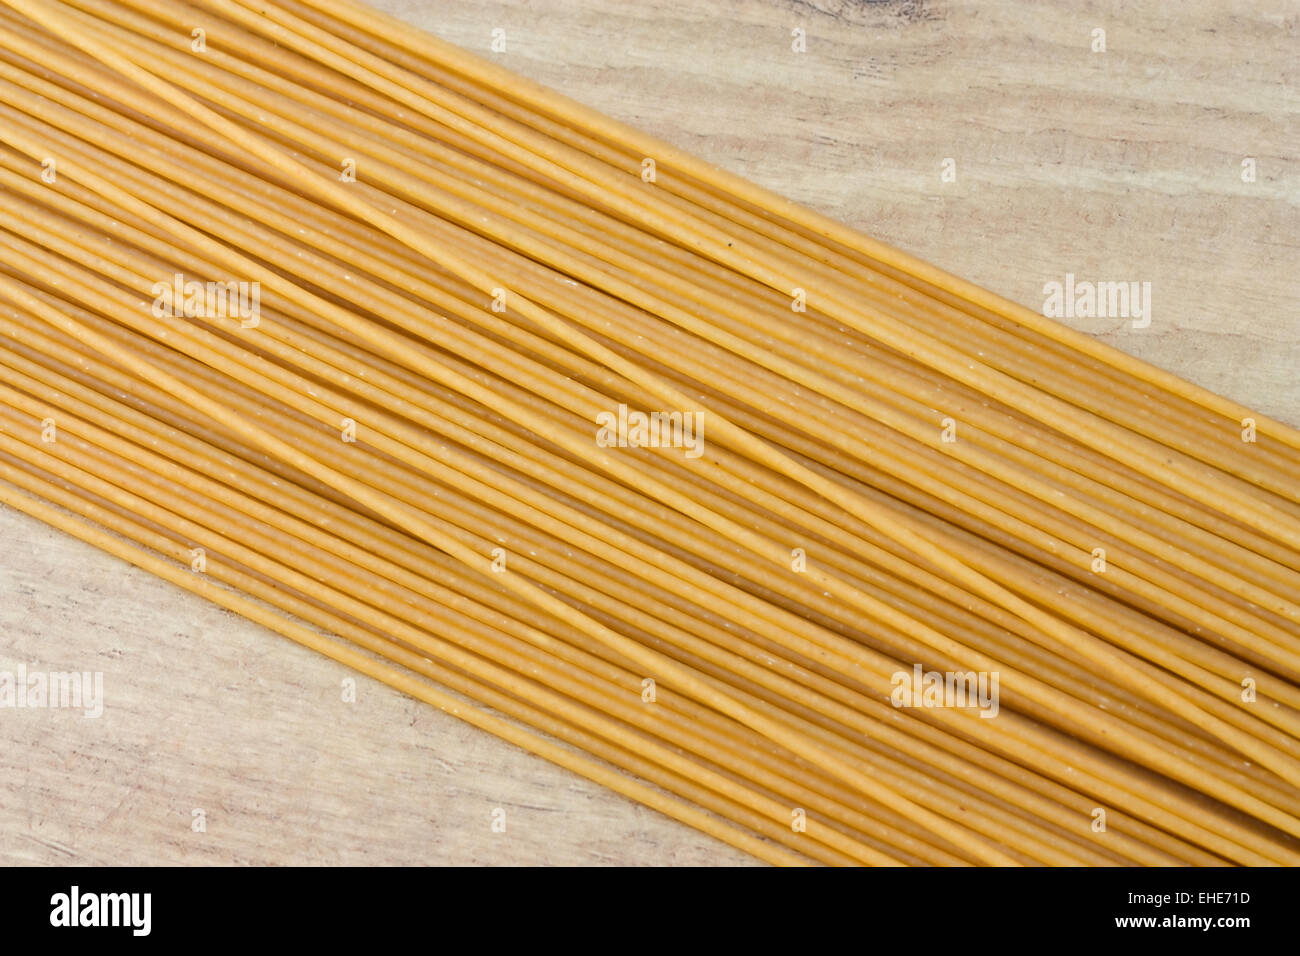 Vollkorn Spaghetti - Wholemeal Pasta Stock Photo